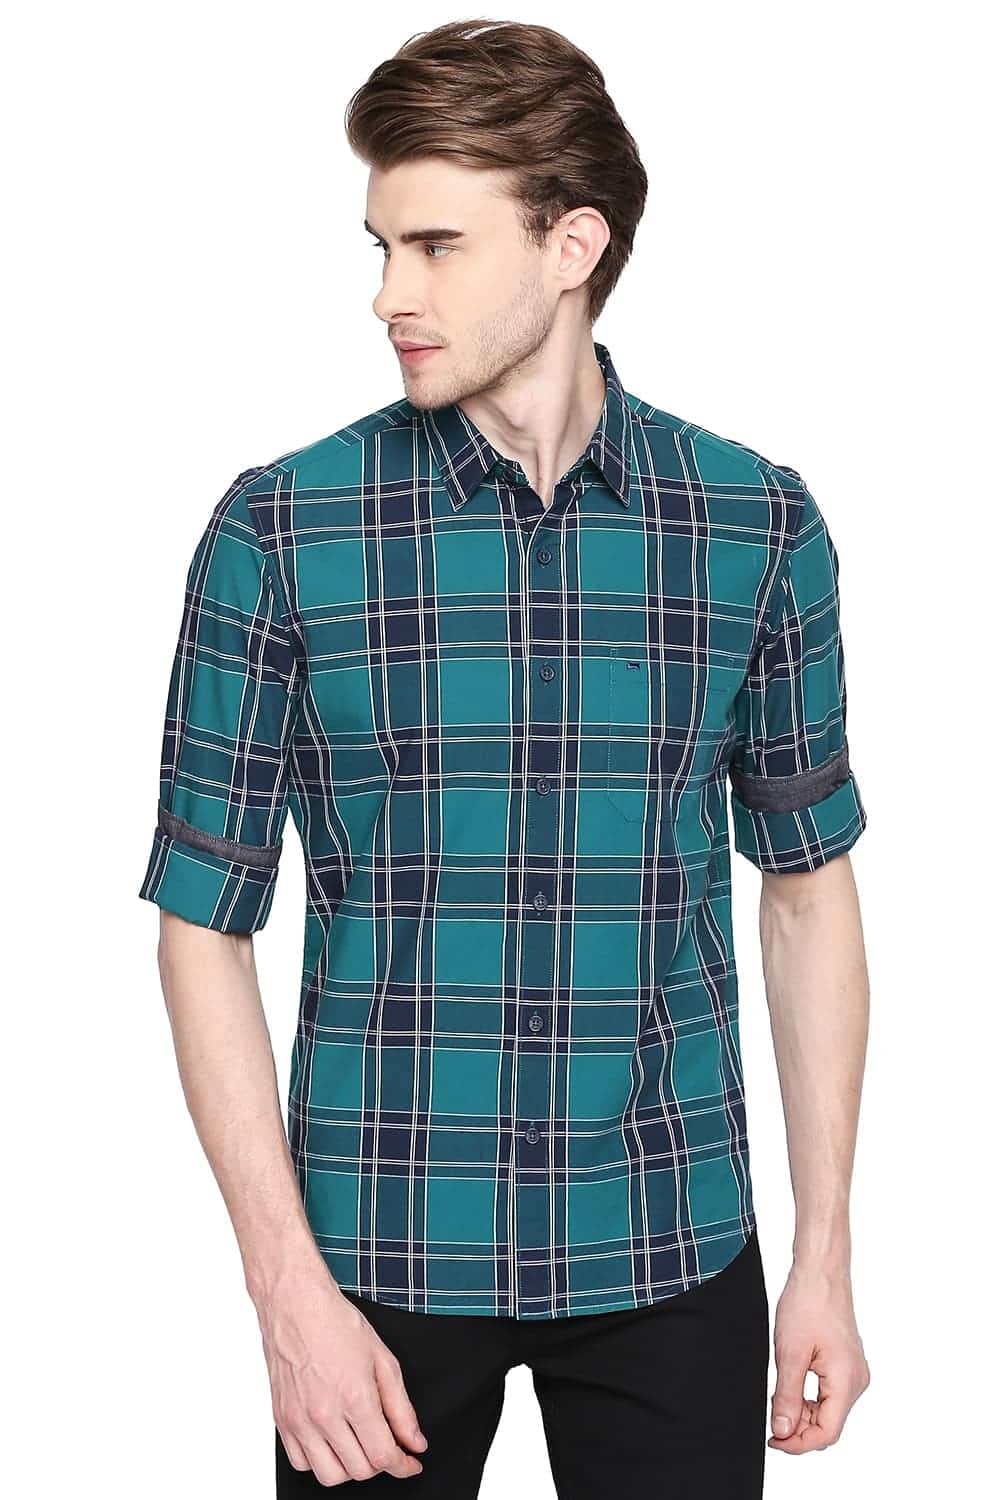 Basics | Basics Slim Fit Parasailing Green Checks Shirt